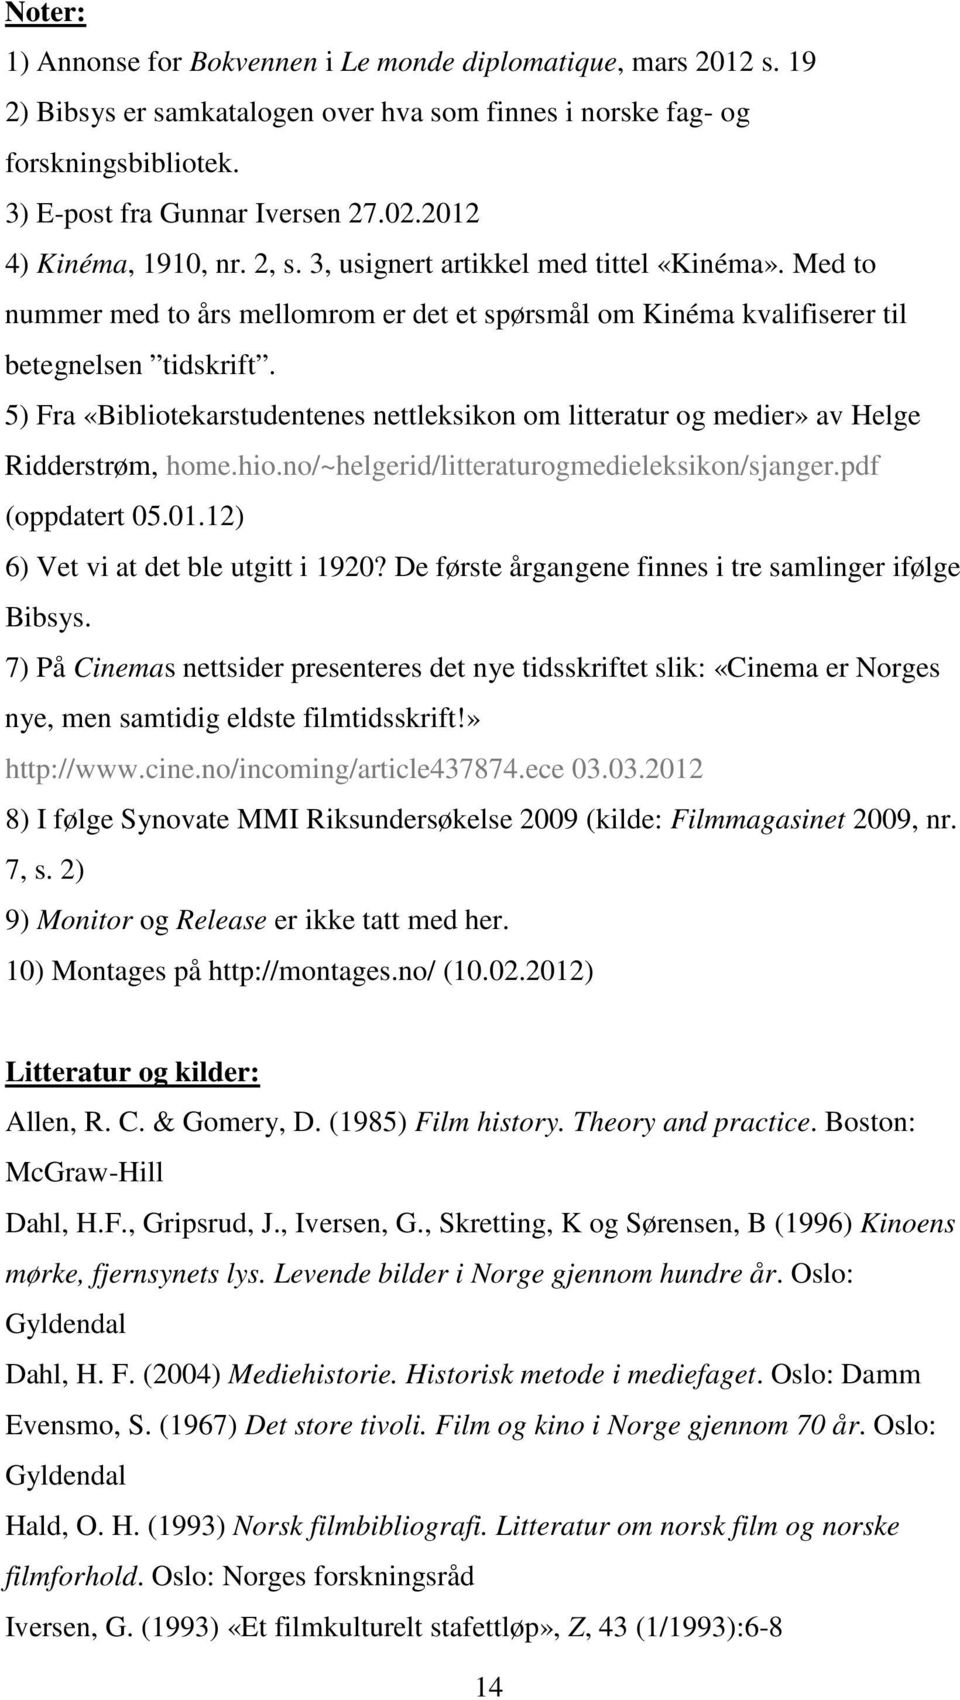 5) Fra «Bibliotekarstudentenes nettleksikon om litteratur og medier» av Helge Ridderstrøm, home.hio.no/~helgerid/litteraturogmedieleksikon/sjanger.pdf (oppdatert 05.01.